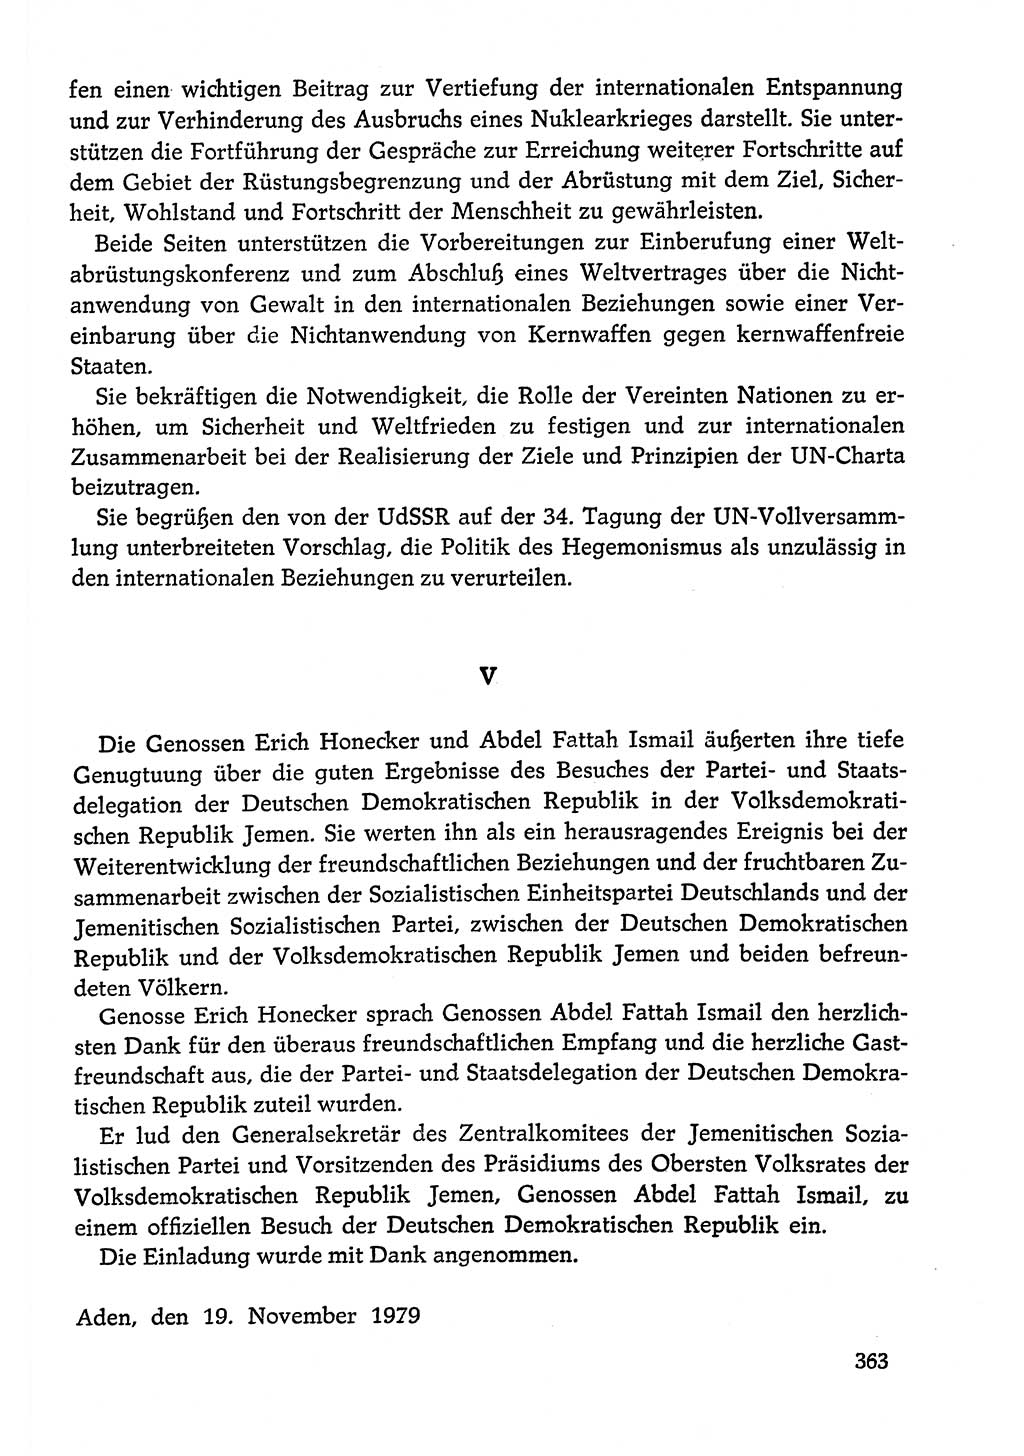 Dokumente der Sozialistischen Einheitspartei Deutschlands (SED) [Deutsche Demokratische Republik (DDR)] 1978-1979, Seite 363 (Dok. SED DDR 1978-1979, S. 363)